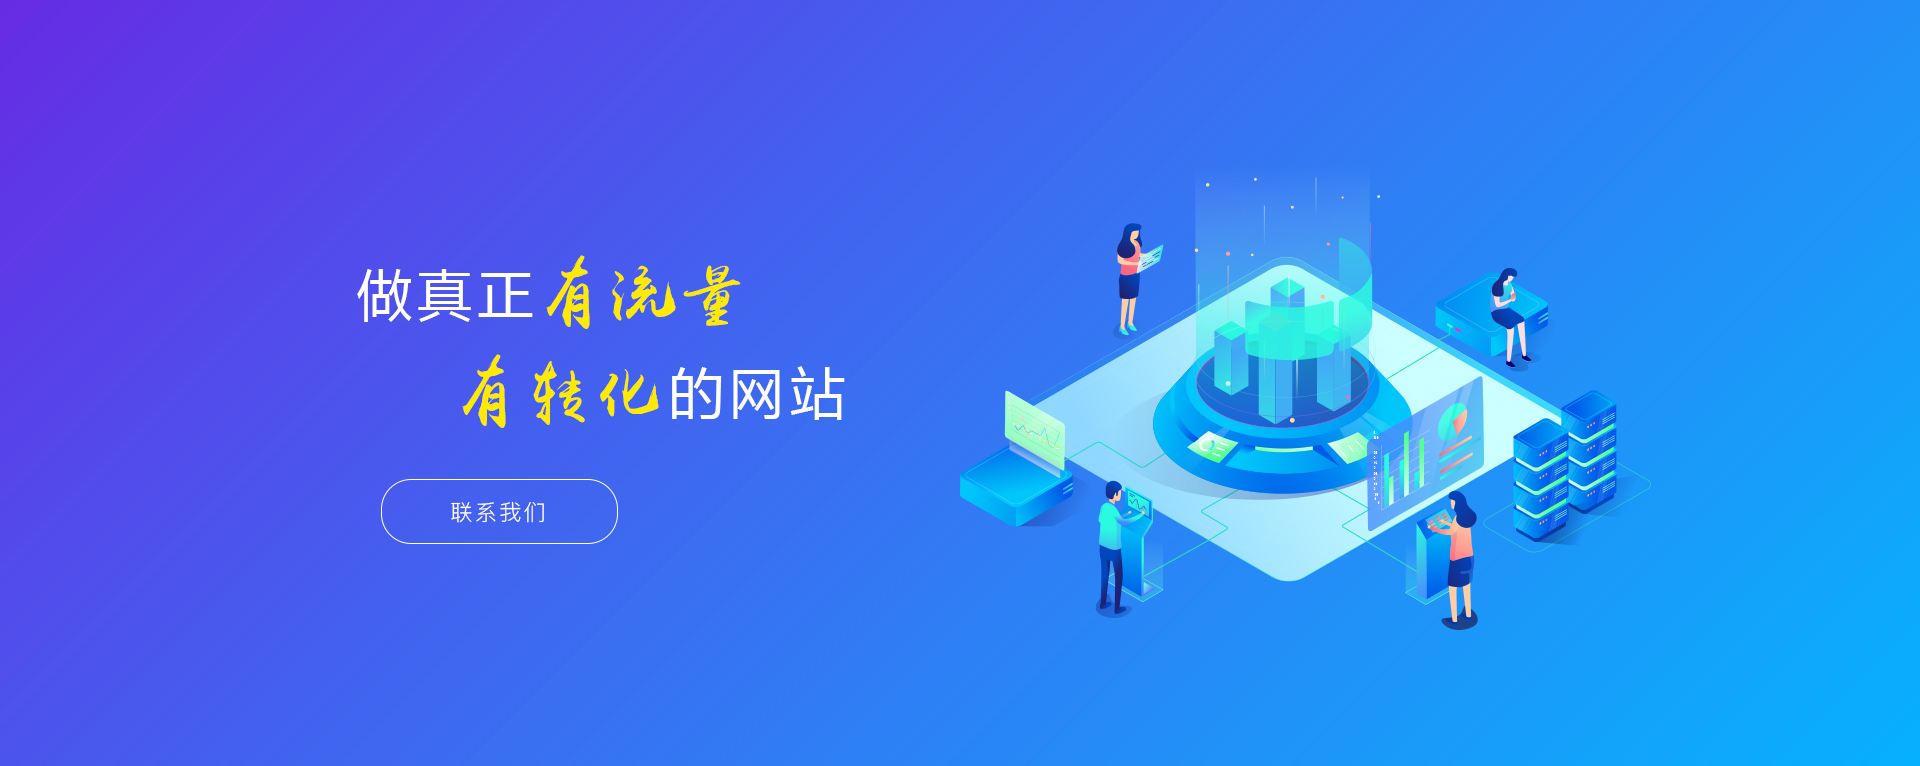 深圳网站建设改版的关键起步之道(图1)